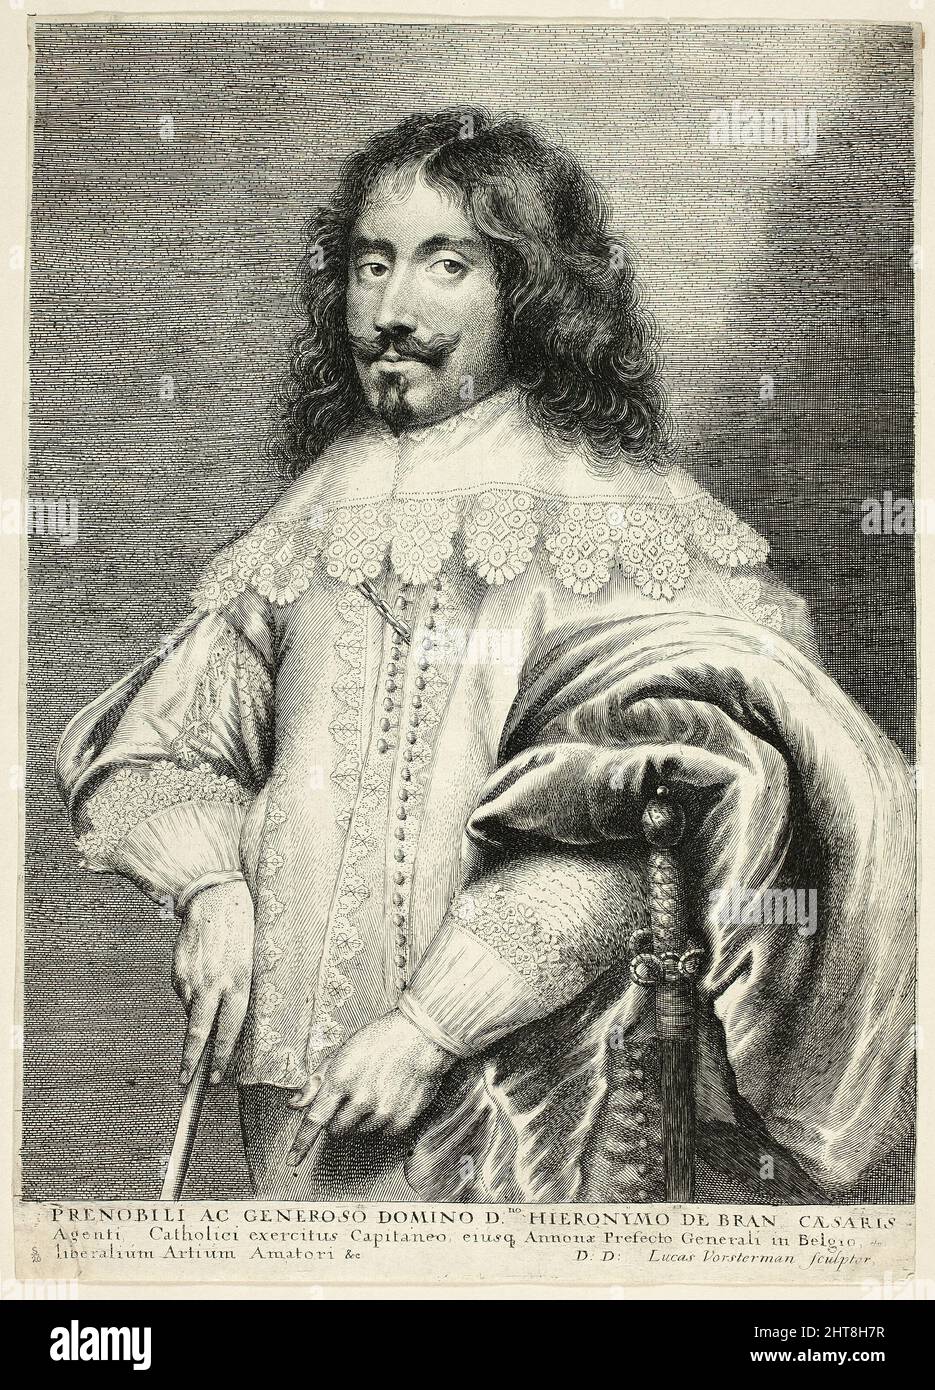 Jeronimo de Bran, c. 1615 - 75. Stock Photo